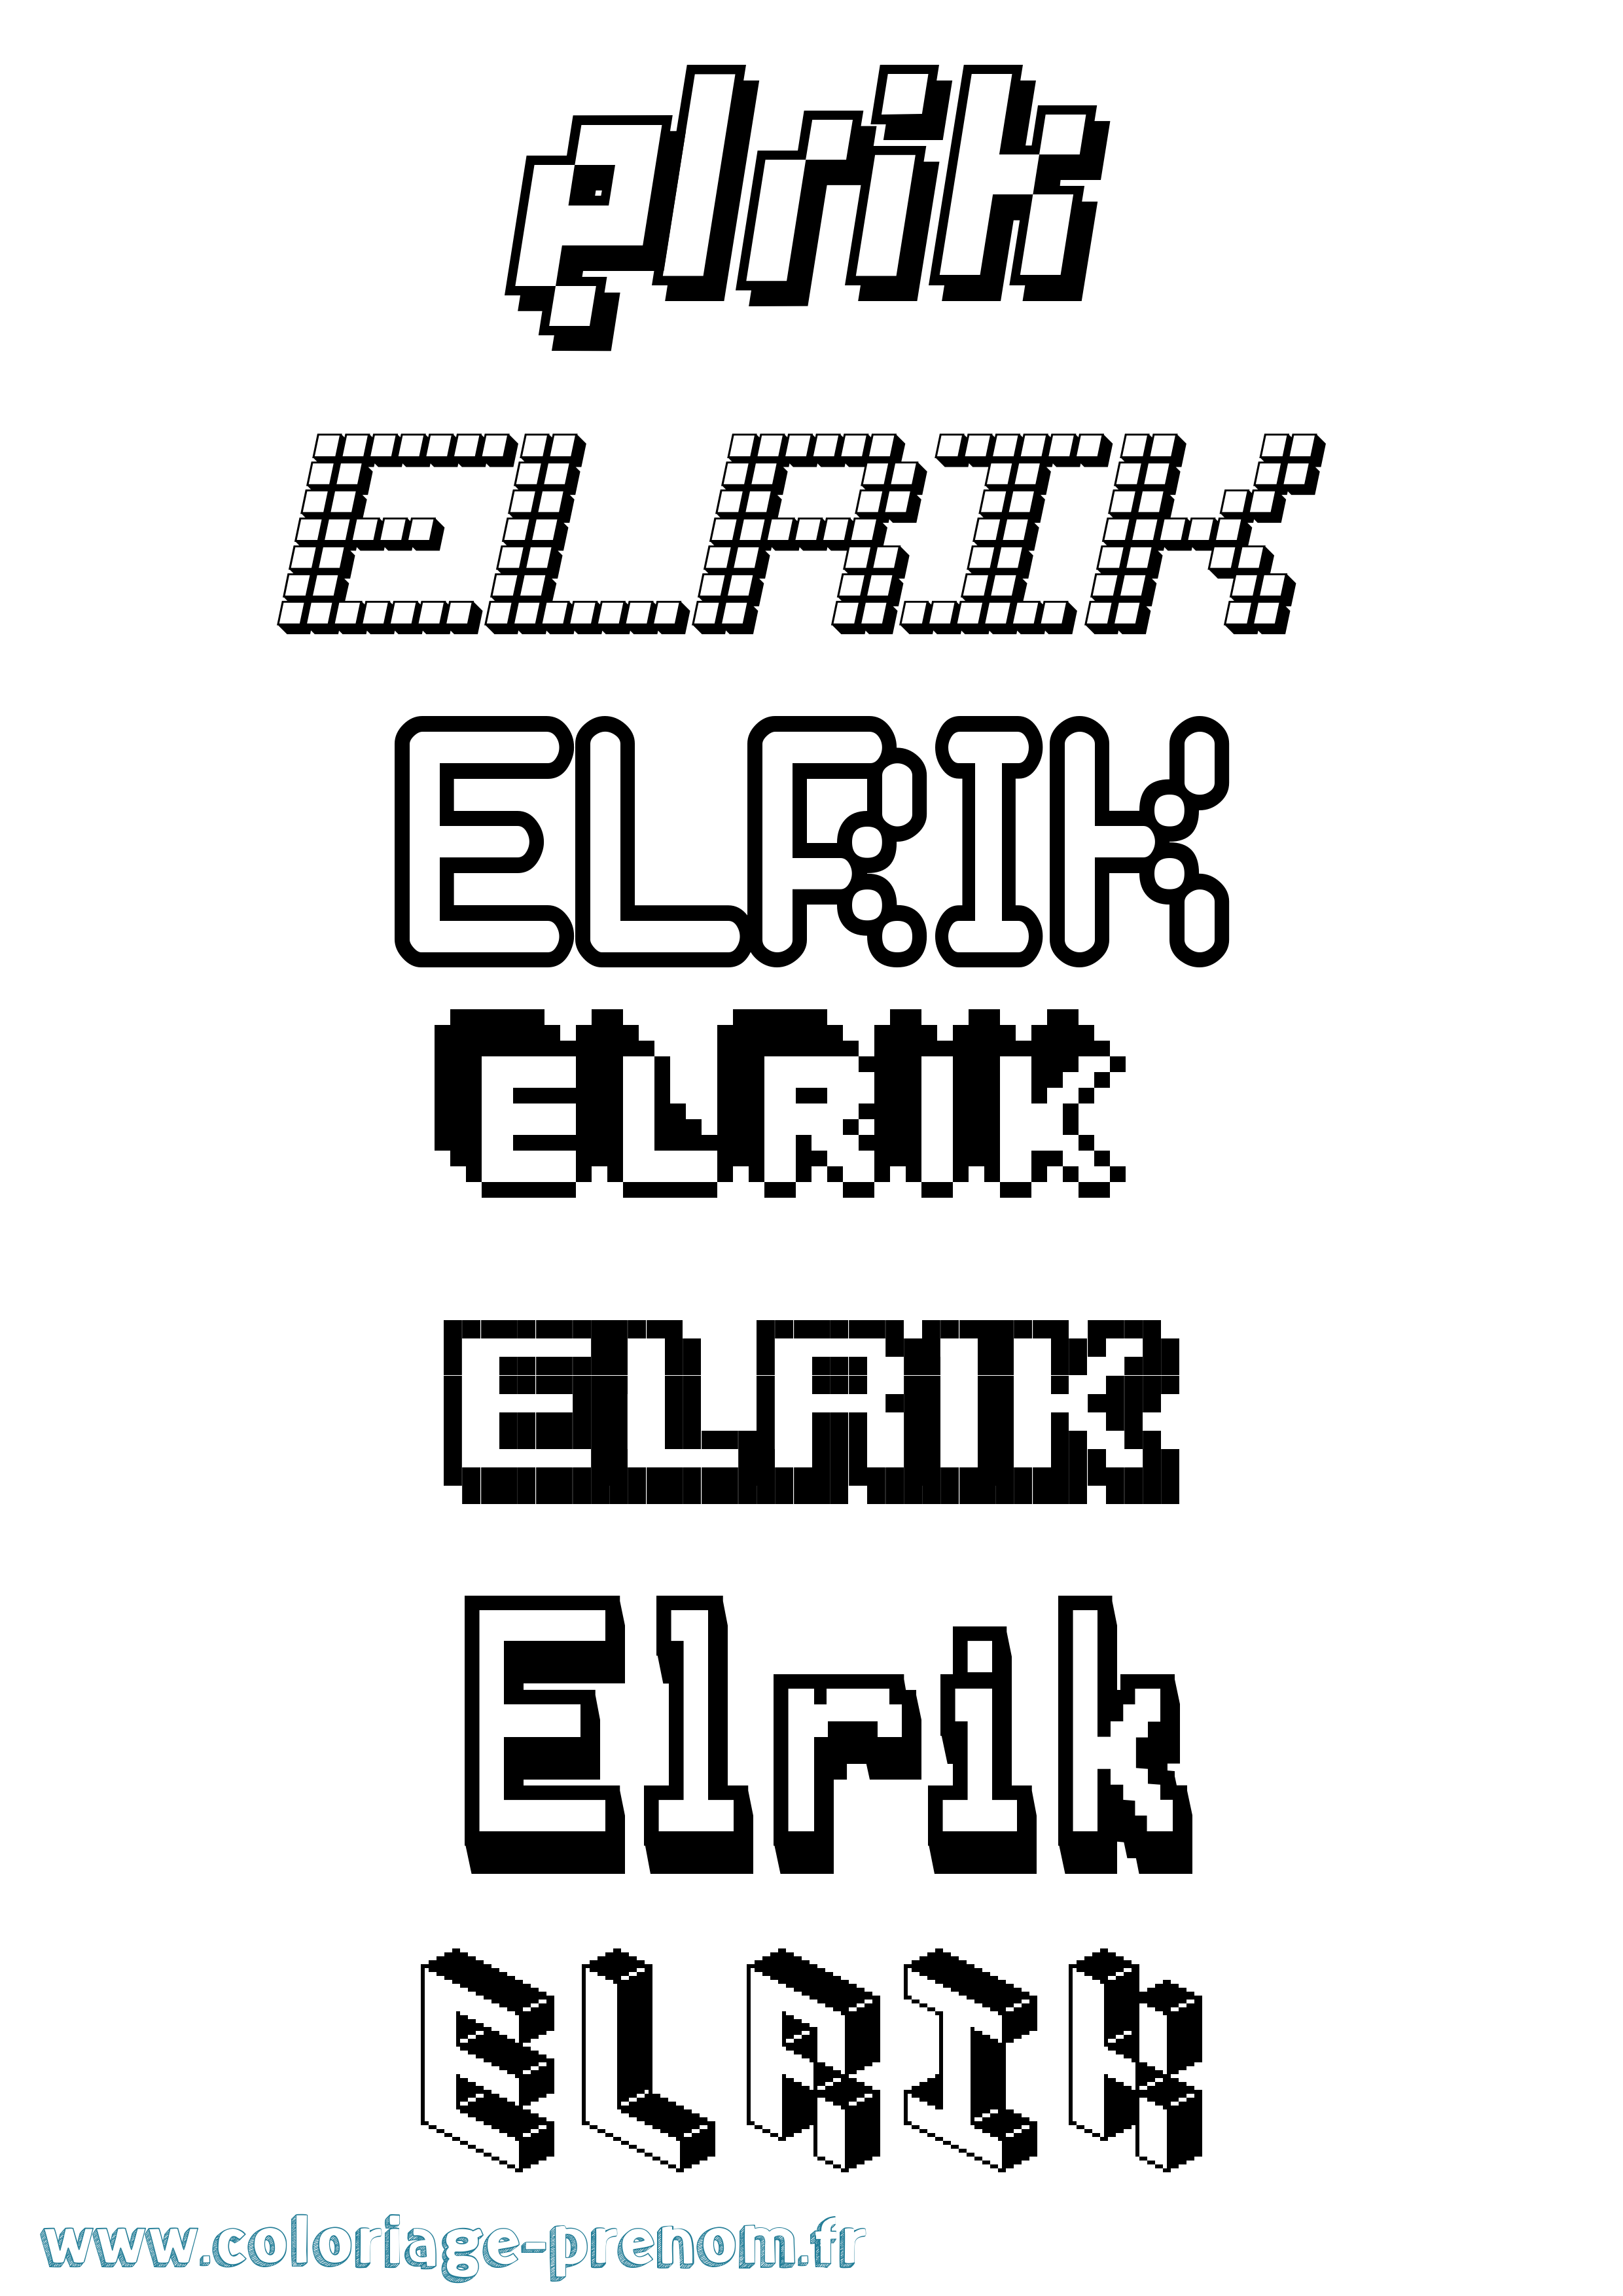 Coloriage prénom Elrik Pixel